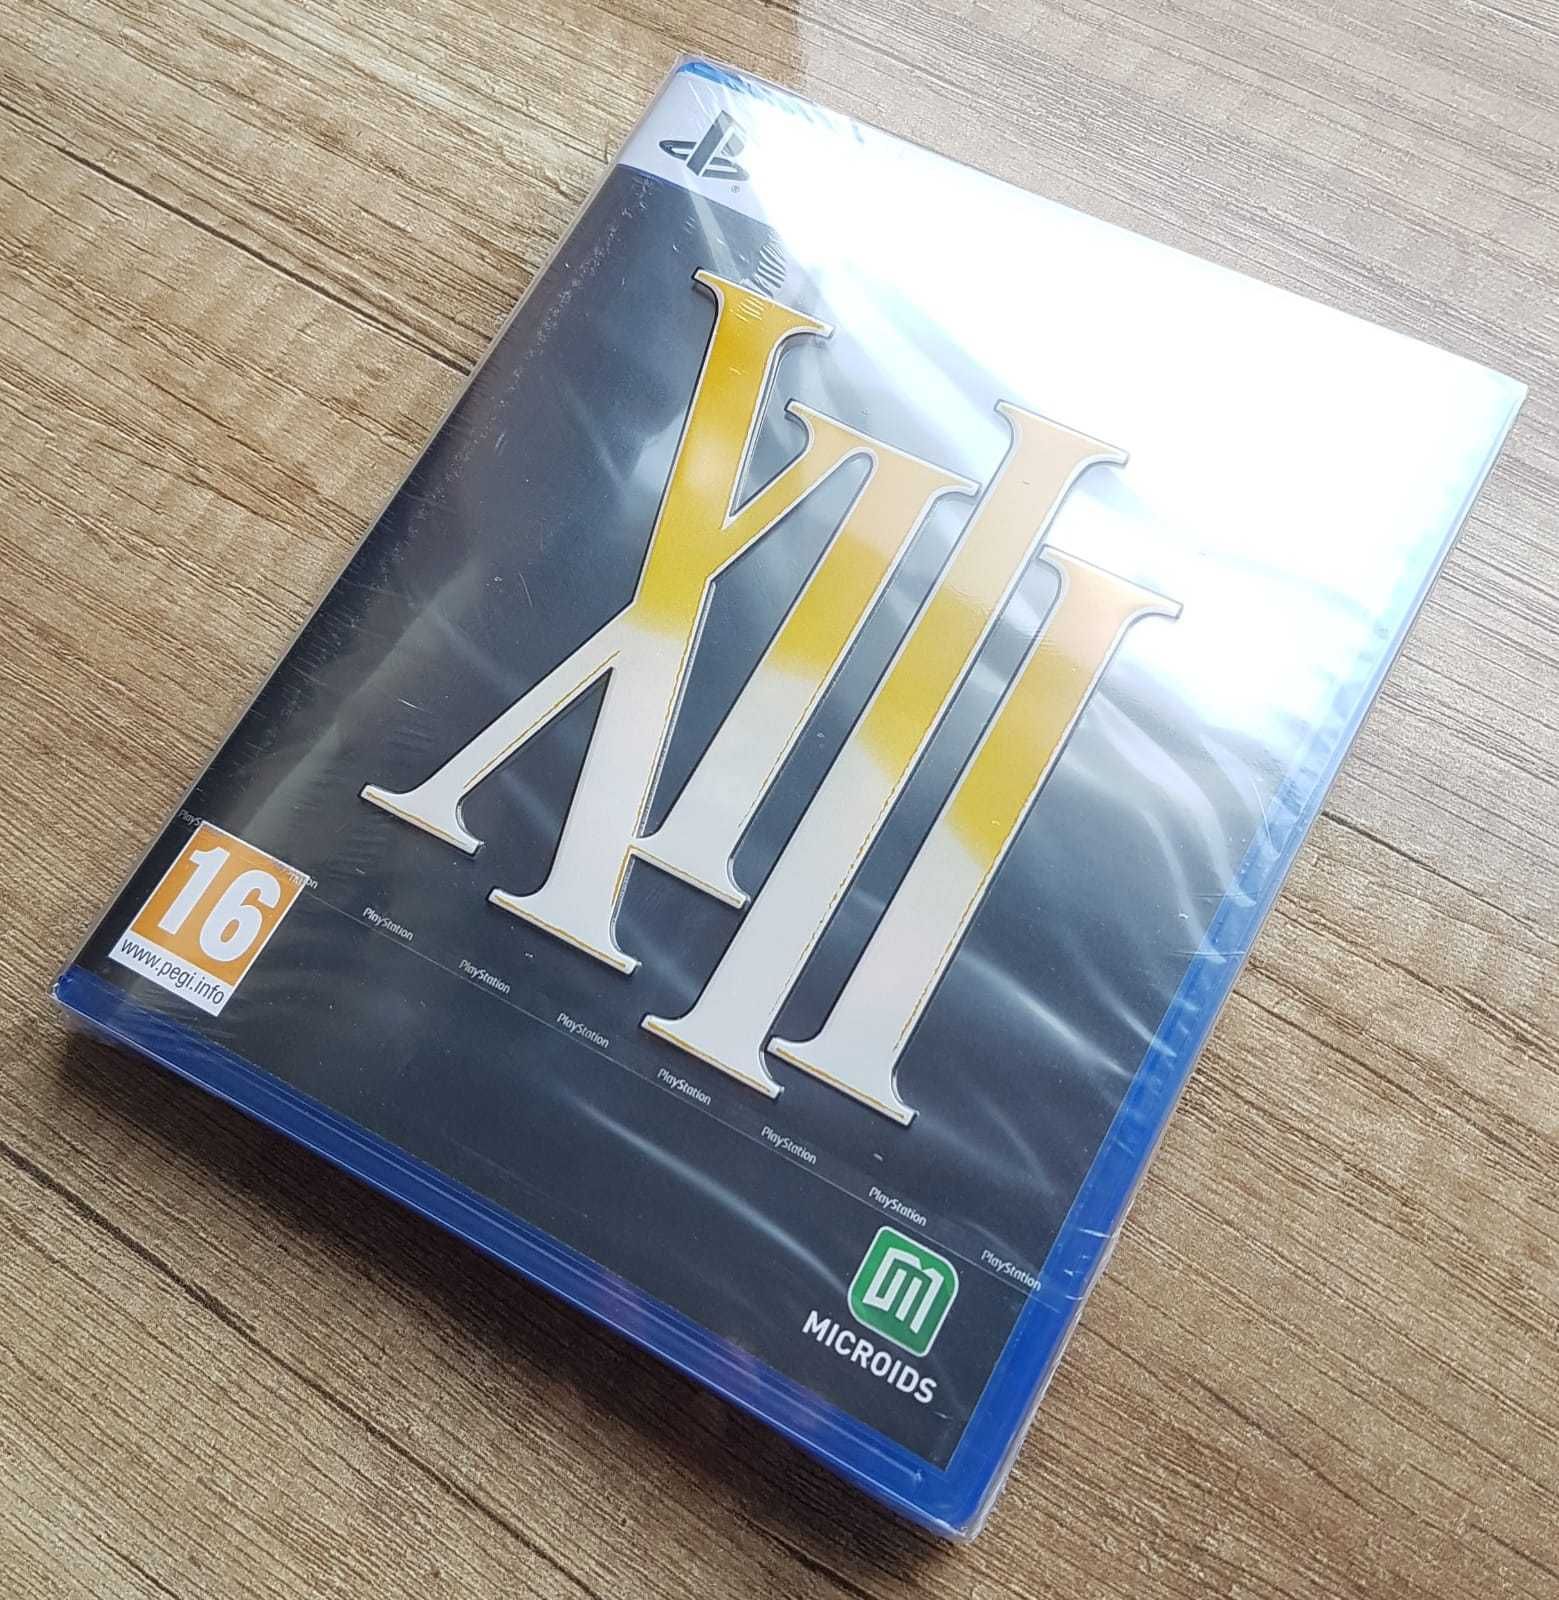 XIII PS5 13 Playstation 5 Nowa gra Płyta Folia Prezent